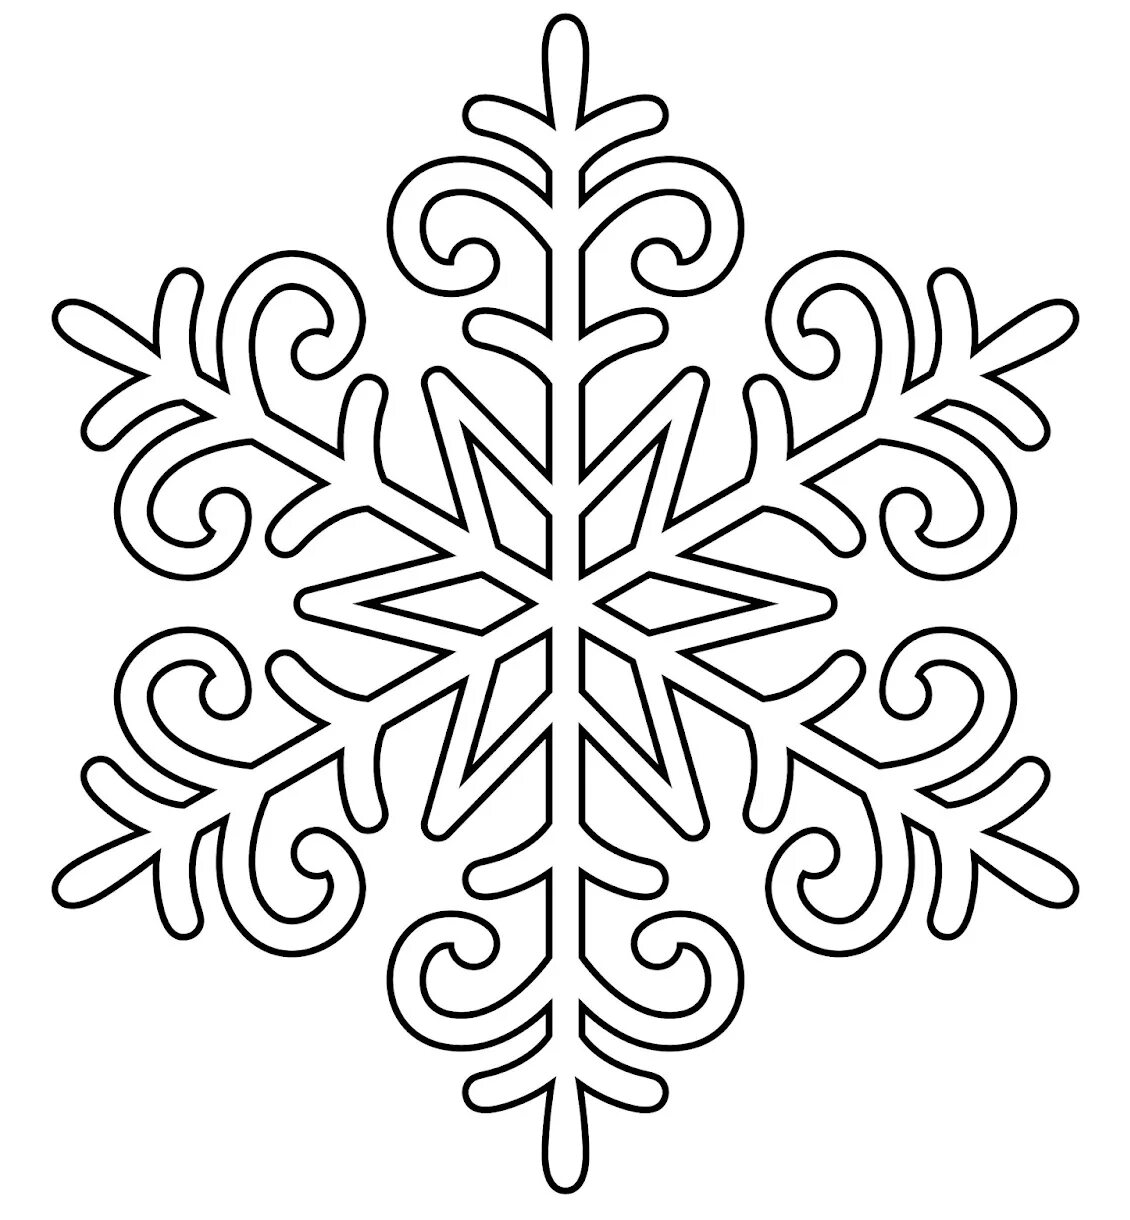 Снежинки красивые шаблоны для вырезания. Снежинка раскраска. Вытынанки снежинки. Снежинка рисунок. Снежинка трафарет для вырезания.